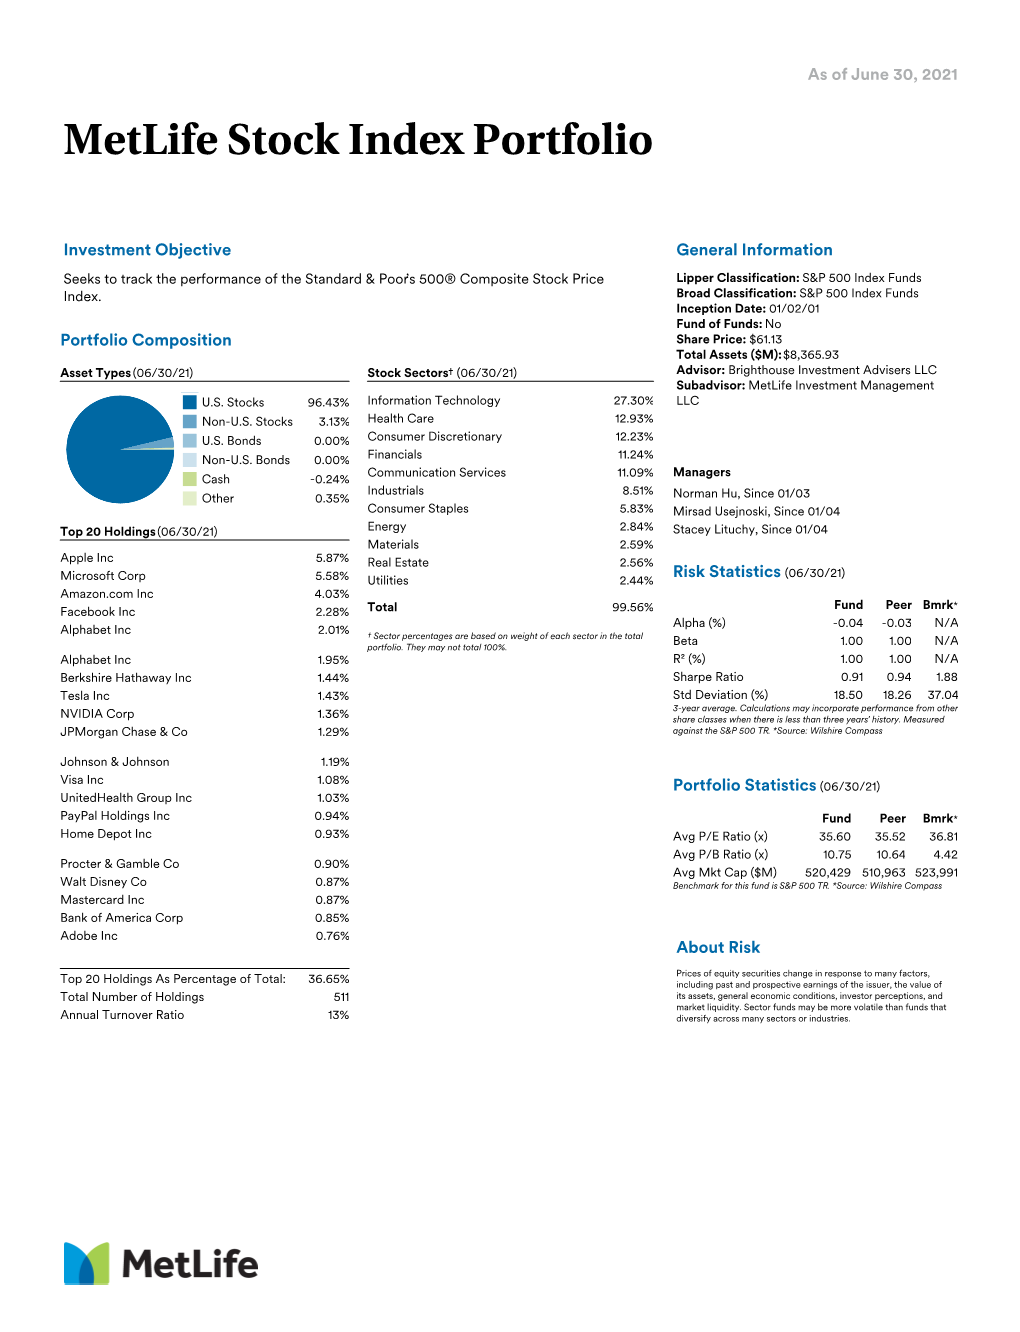 Metlife Stock Index Portfolio